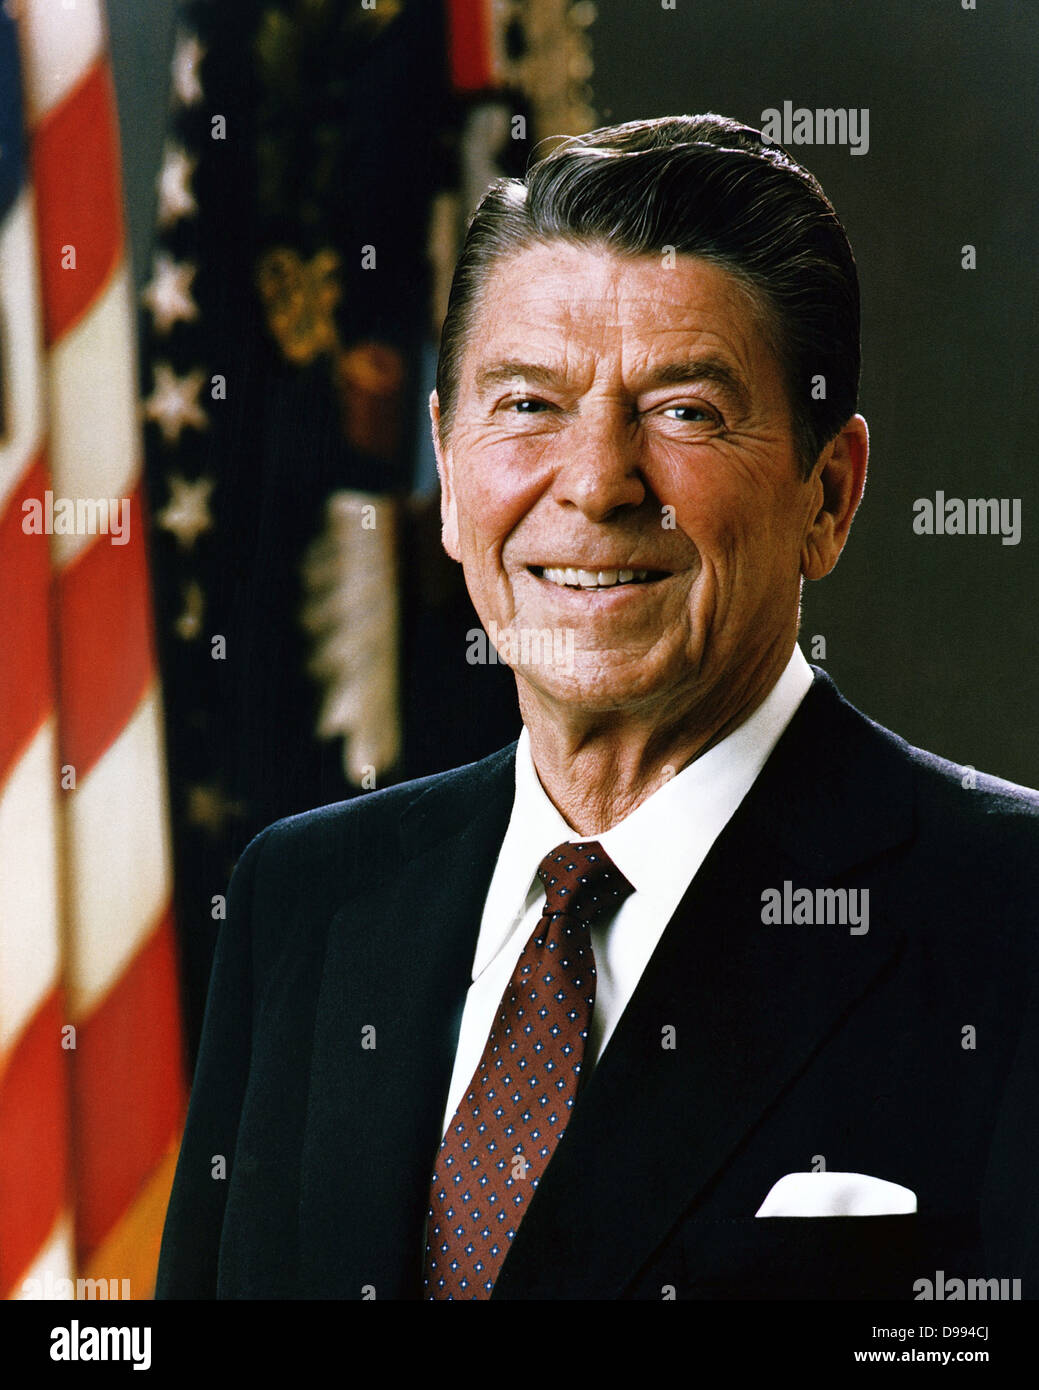 Portrait officiel du président Ronald Reagan, 1981. Ronald Wilson Reagan (6 février 1911 - 5 juin 2004) était le 40e président des États-Unis (1981-1989) et le 33e gouverneur de Californie (1967-1975). Banque D'Images